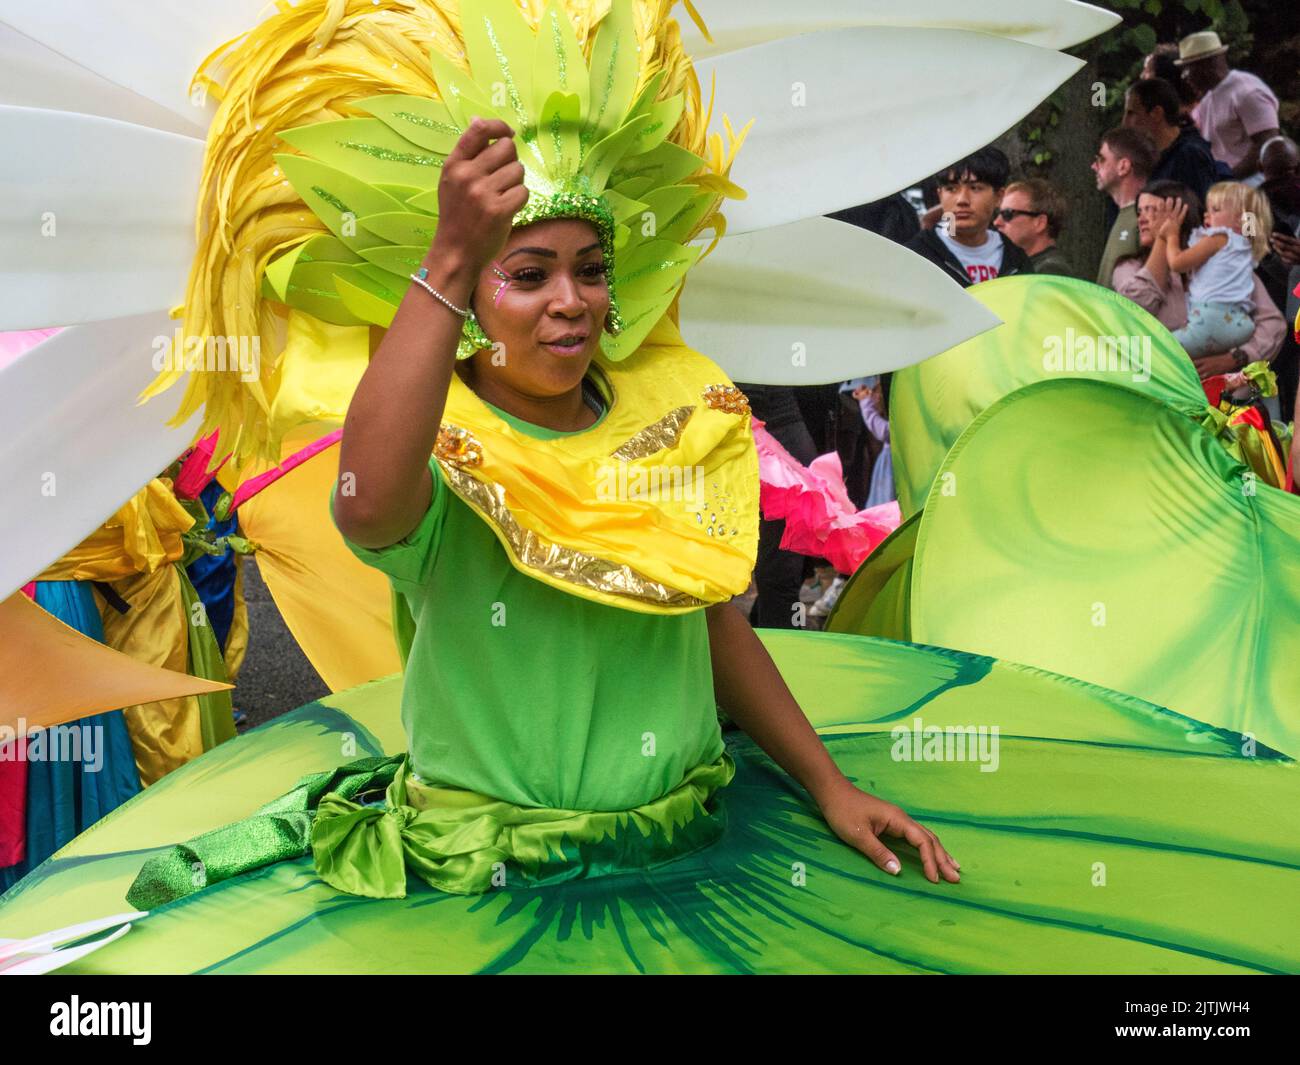 2022 de agosto de 29 - Reino Unido - Yorkshire - Leeds West Indian Carnival - bailarín de colores en el desfile que regresa a lo largo de la avenida Harehills Avenue Foto de stock